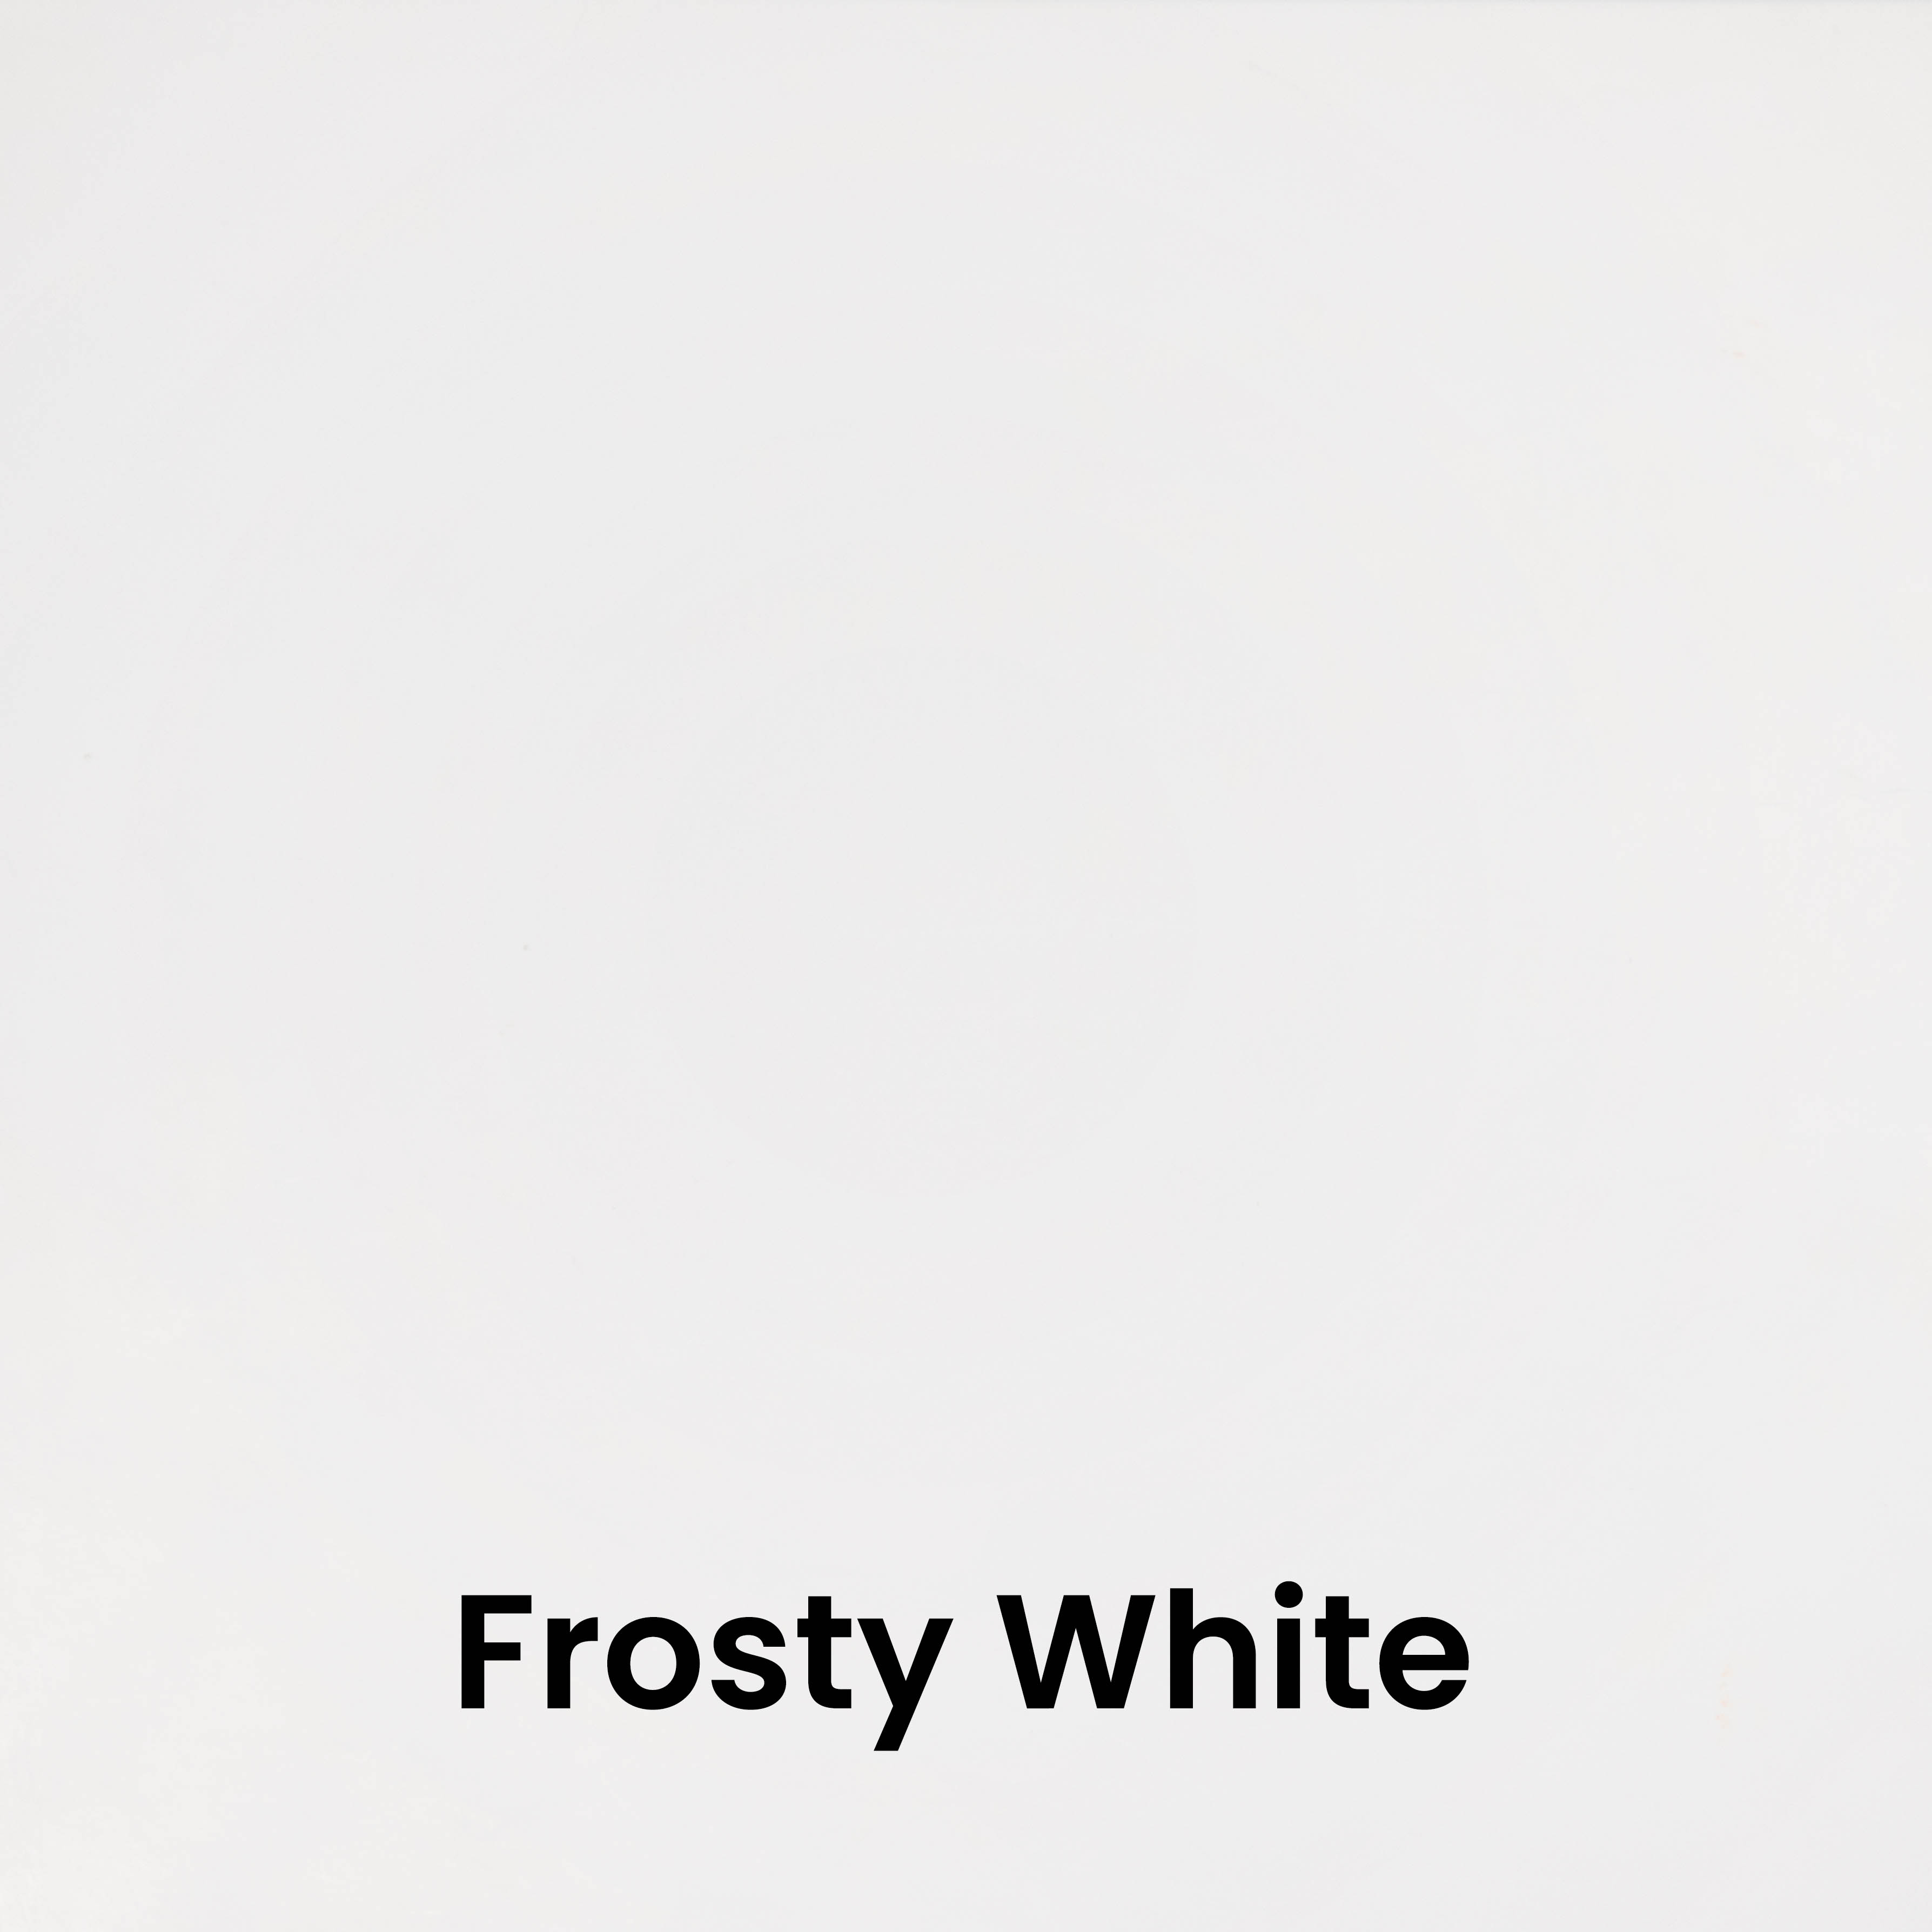 Frosty White